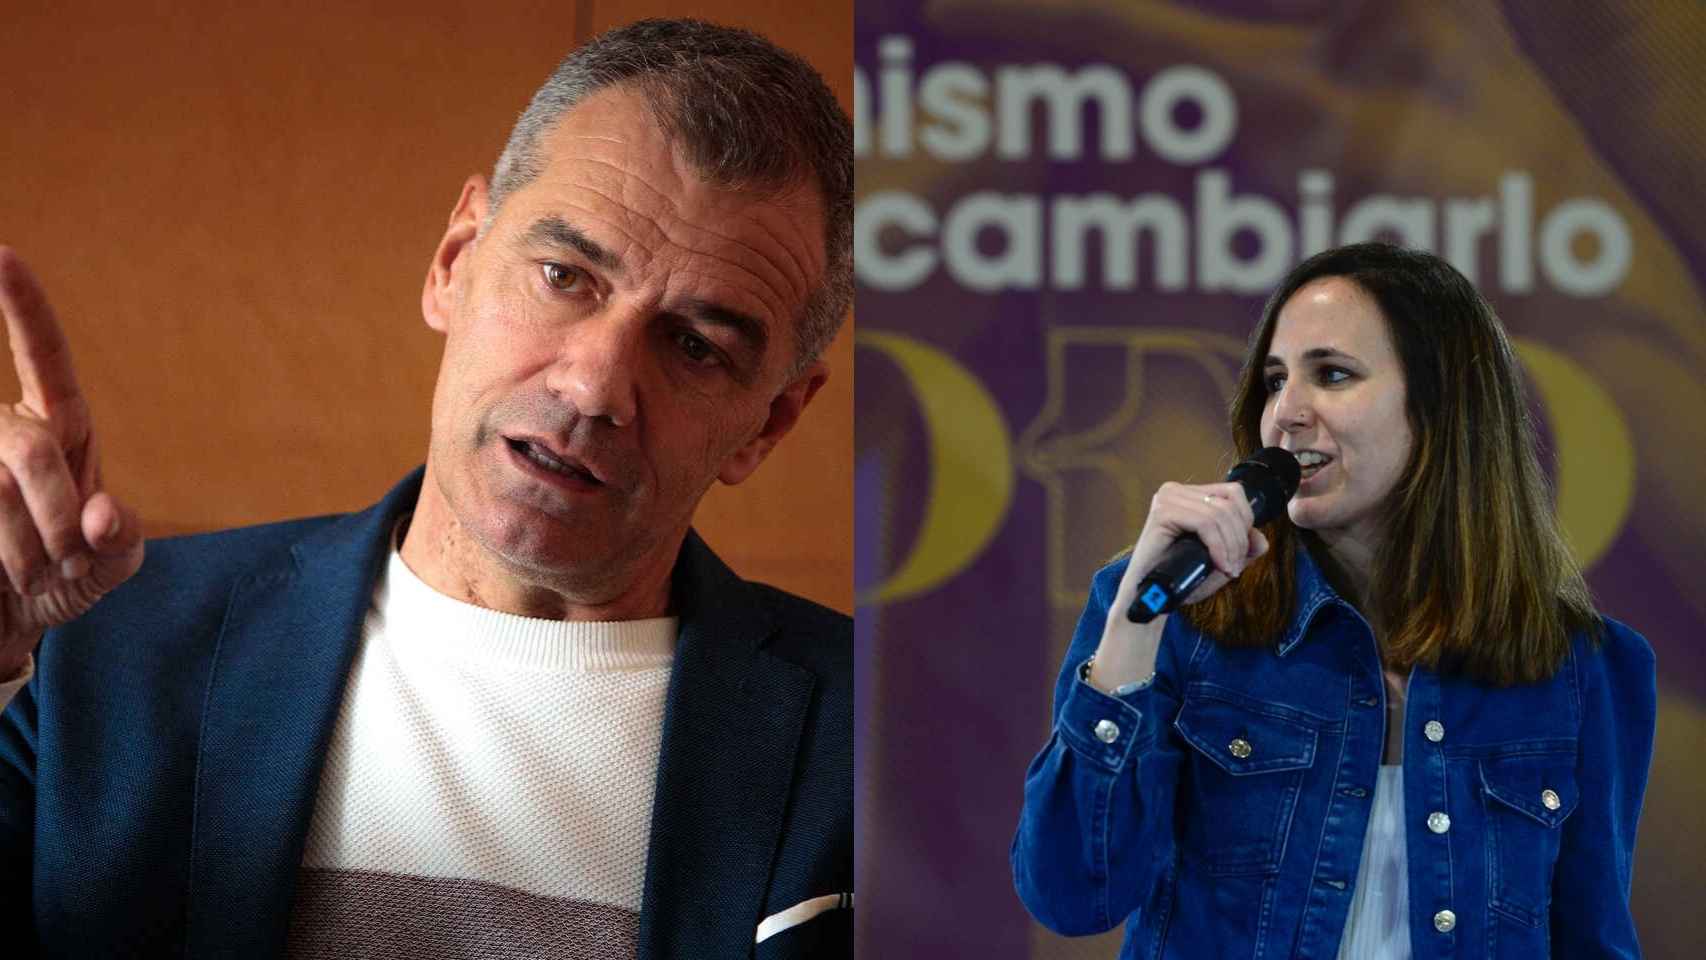 Lluvia de zascas a Toni Cantó por sus últimas críticas a PSOE y Podemos: Antonio, por favor...